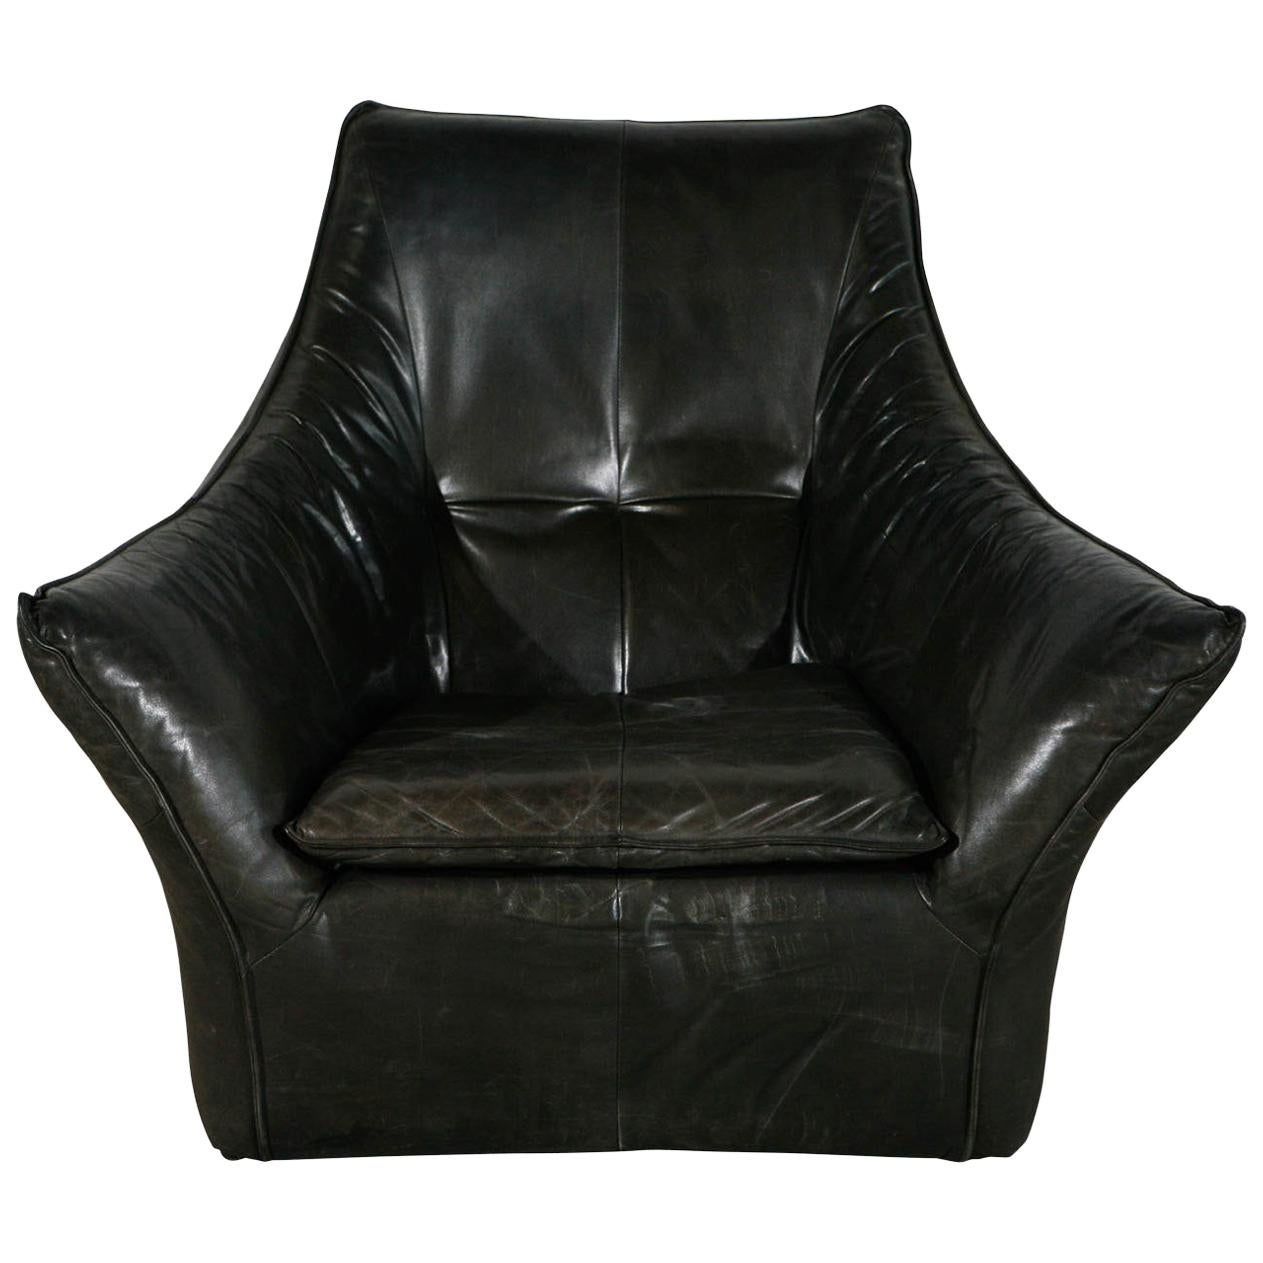 Gerard van den Berg Lounge Chair For Sale